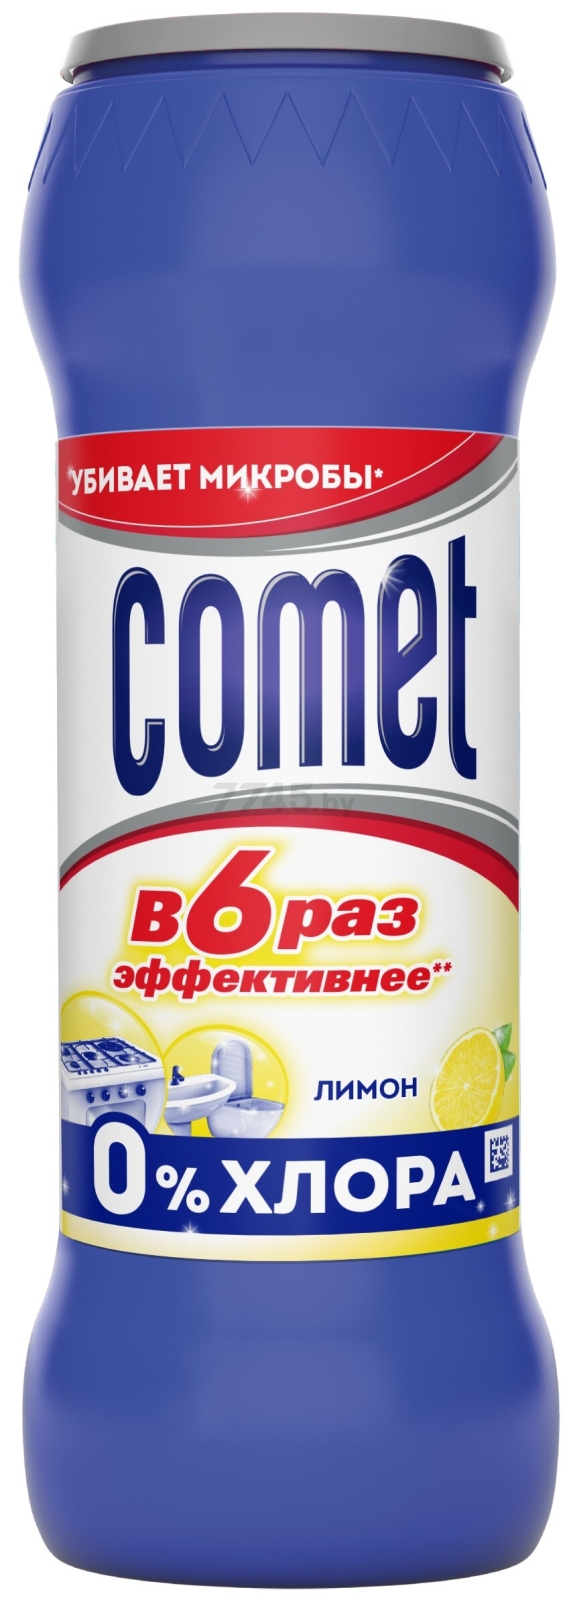 Порошок чистящий универсальный COMET Лимон без хлоринола 0,475 кг (8001480029279)